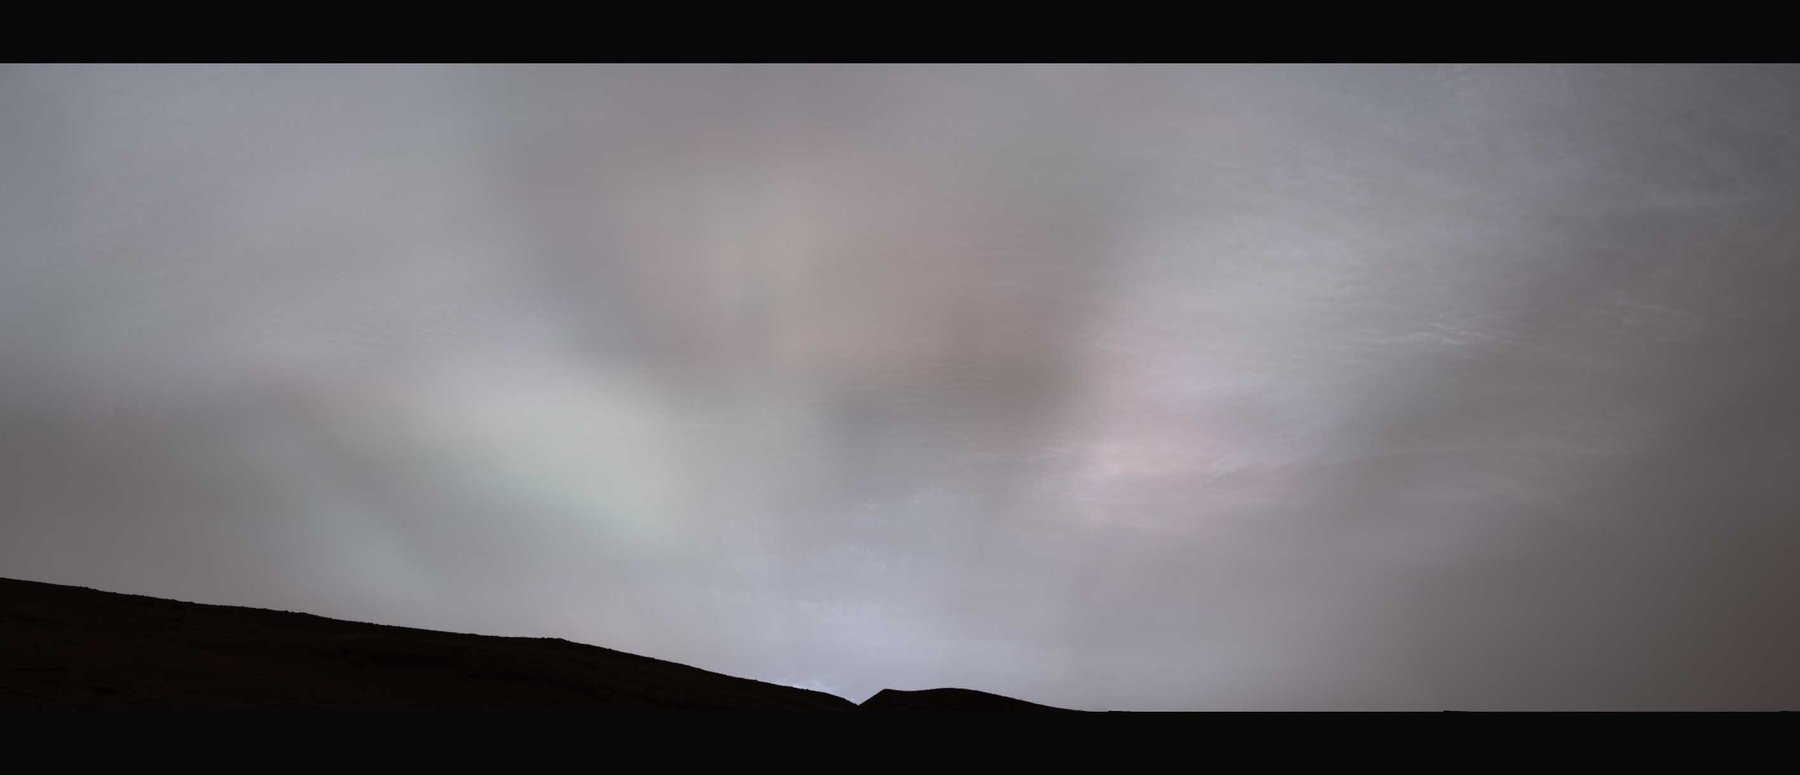 Панорама з сутінковими променями, яку зробив&amp;nbsp;«К'юріосіті».&amp;nbsp;NASA / JPL-Caltech / MSSS